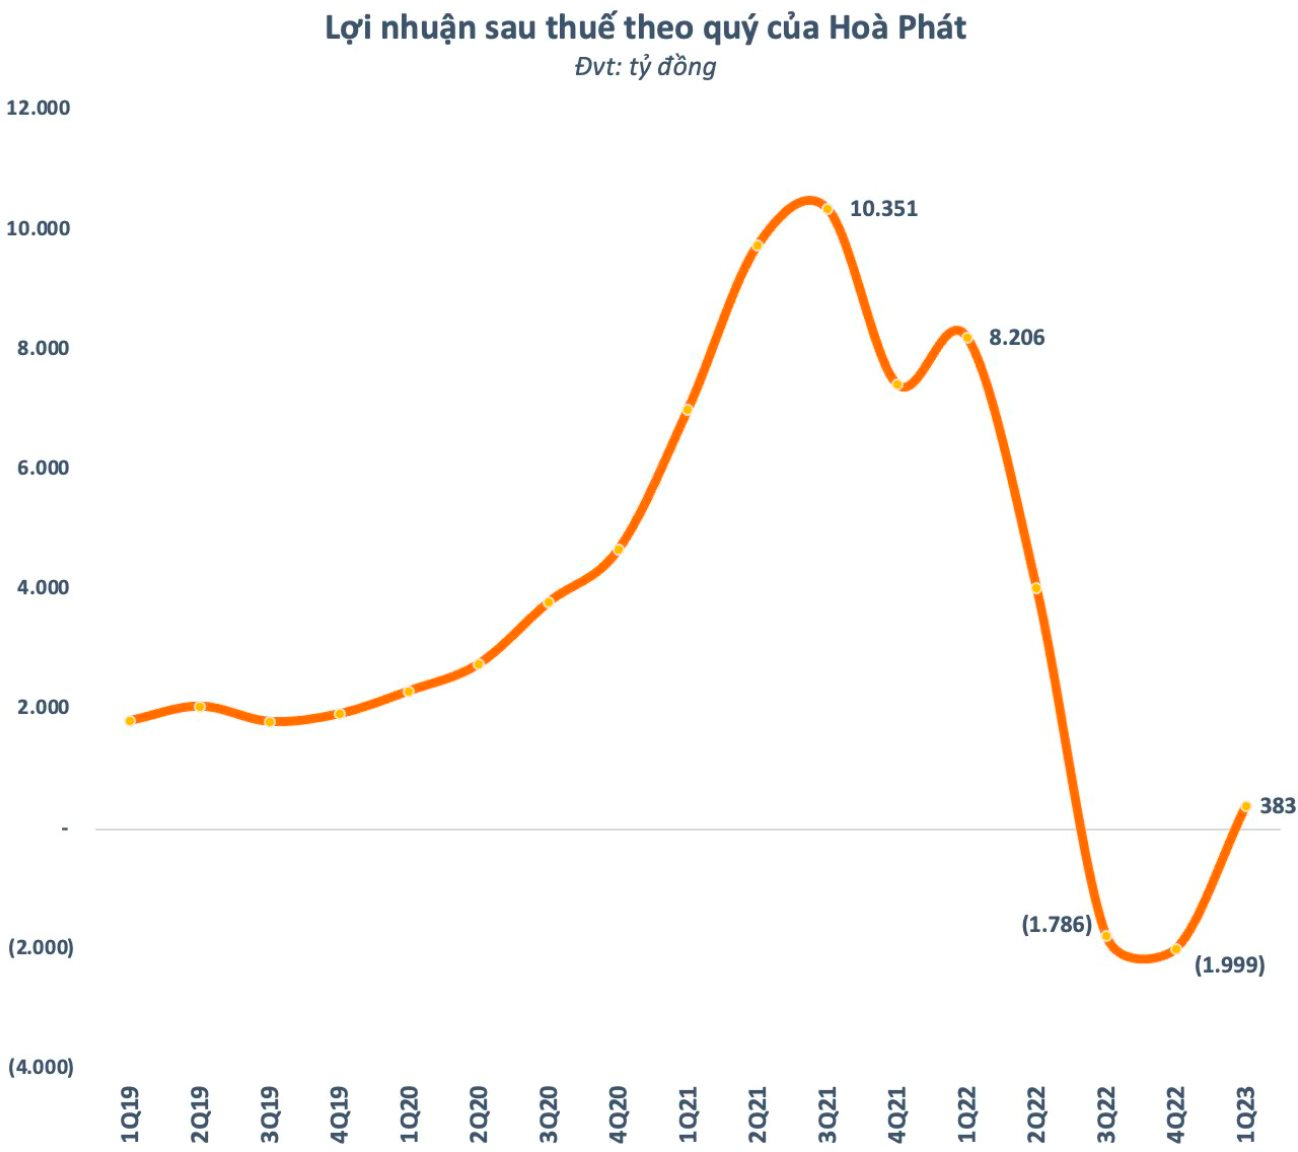 Từng lỗ đậm khi ôm cổ phiếu Hoà Phát, các tay chơi đang “về bờ”, có DN đã lãi trở lại khi thị giá HPG tăng 84% sau nửa năm - Ảnh 5.